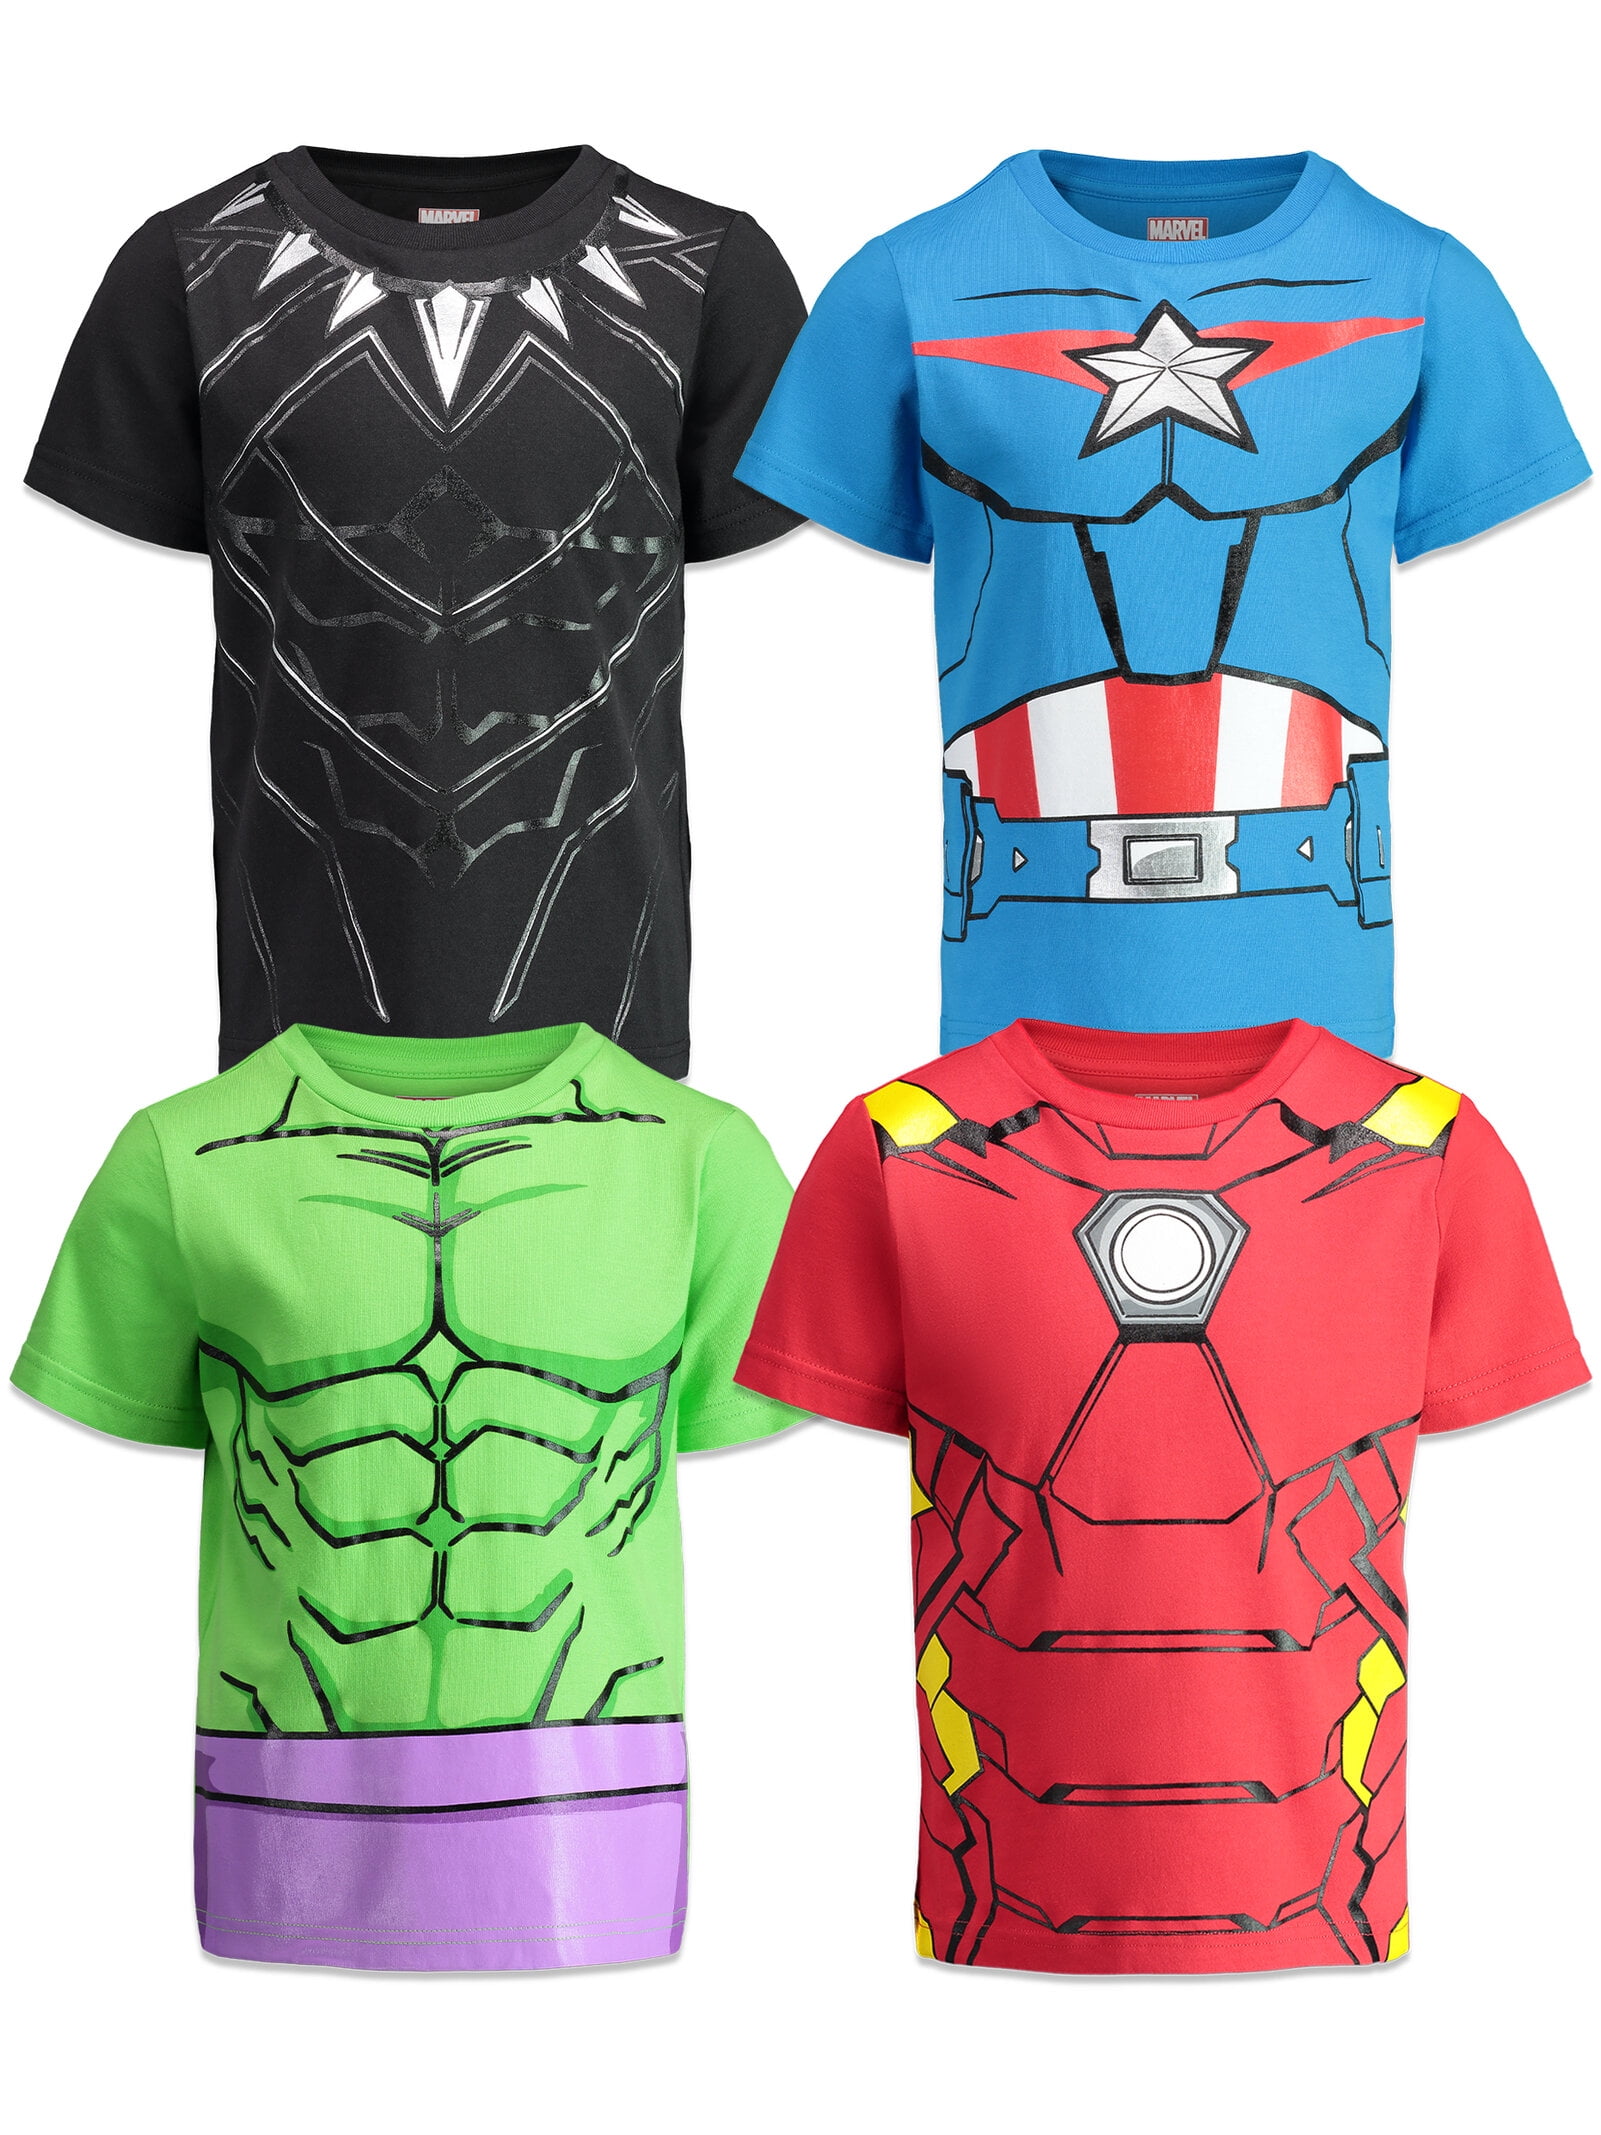 Marvel 's  CAPTAIN AMERICA Shirt  Sizes Boys 4  5/6  7  The FIRST AVENGER 